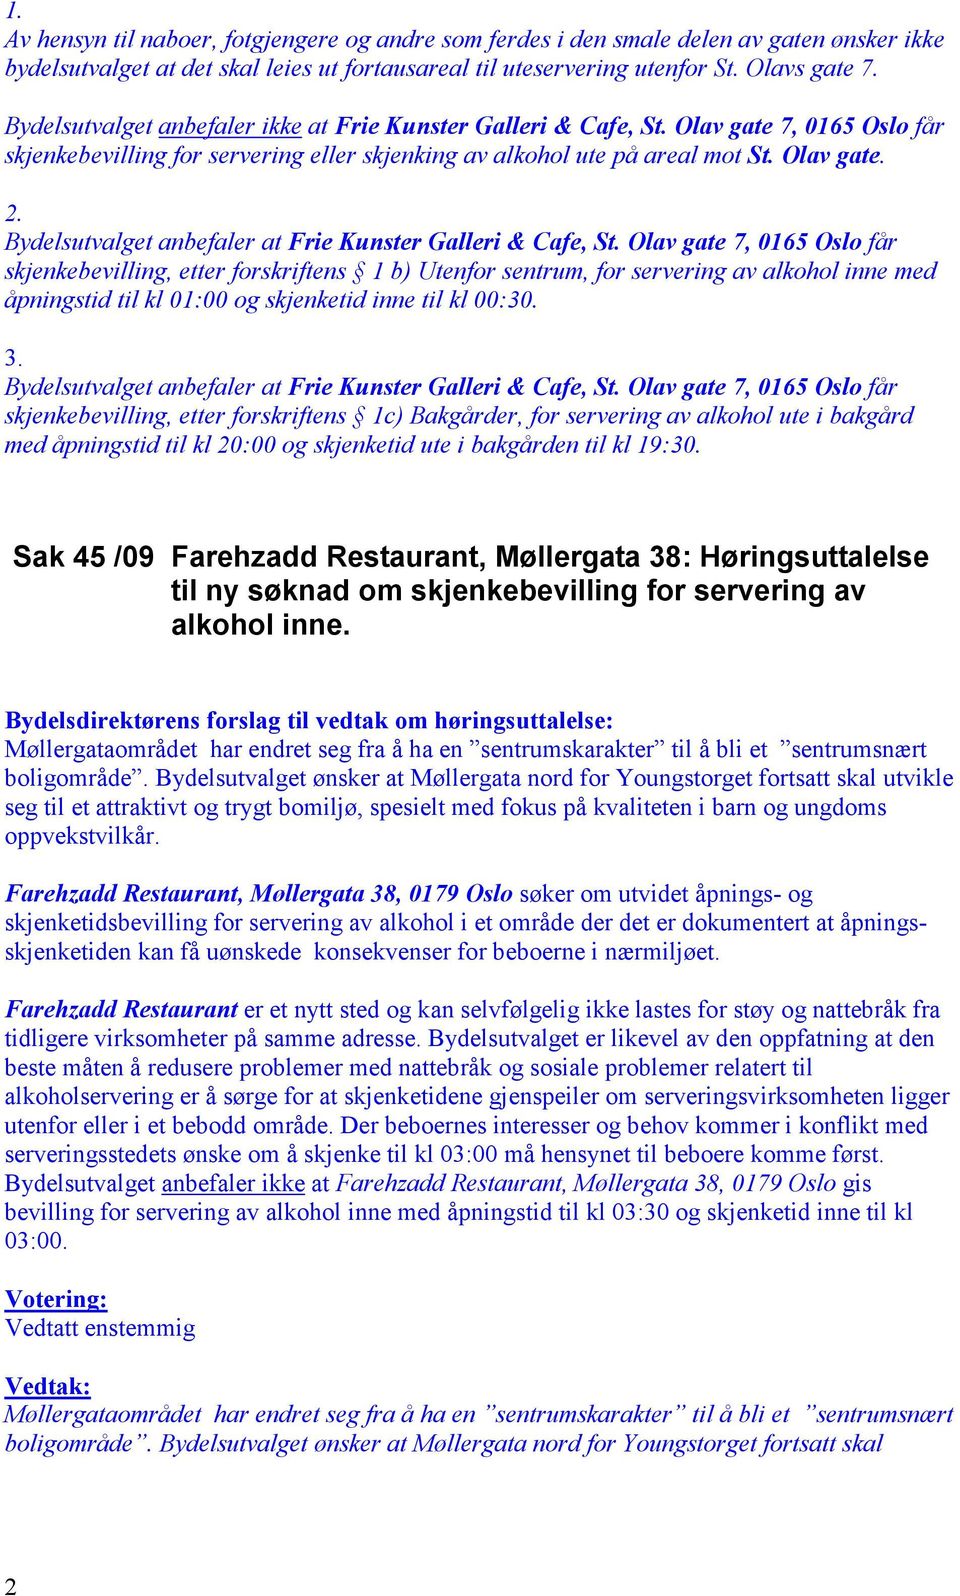 Bydelsutvalget anbefaler at Frie Kunster Galleri & Cafe, St.